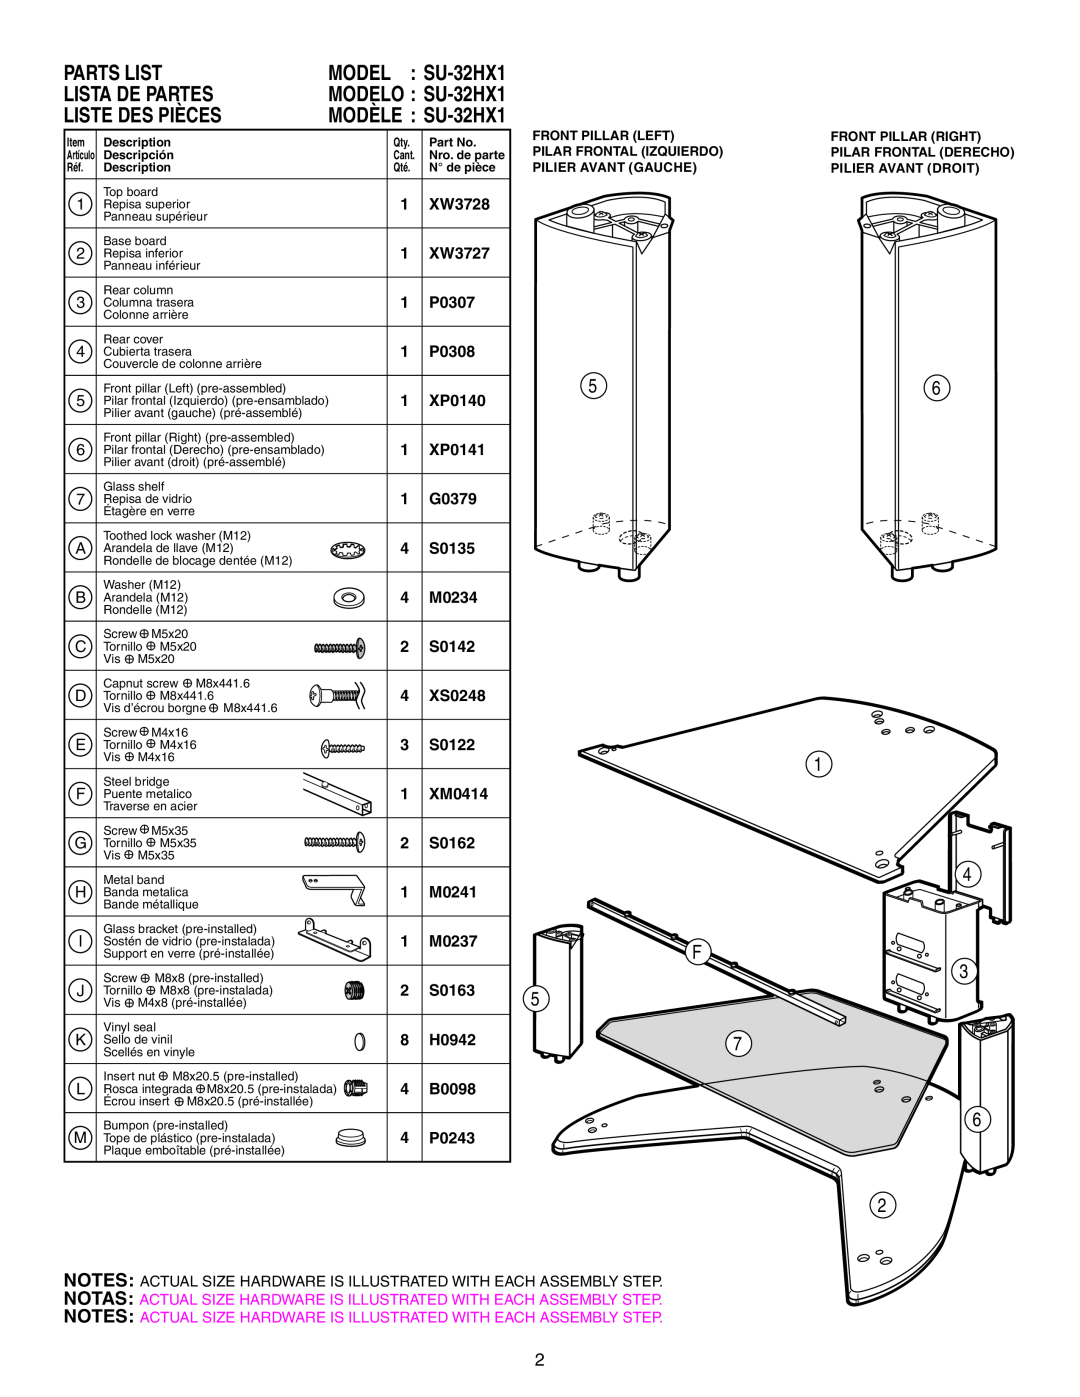 Sony manual Lista De Partes, Liste Des Pièces, Parts List, 5 F, MODEL SU-32HX1 